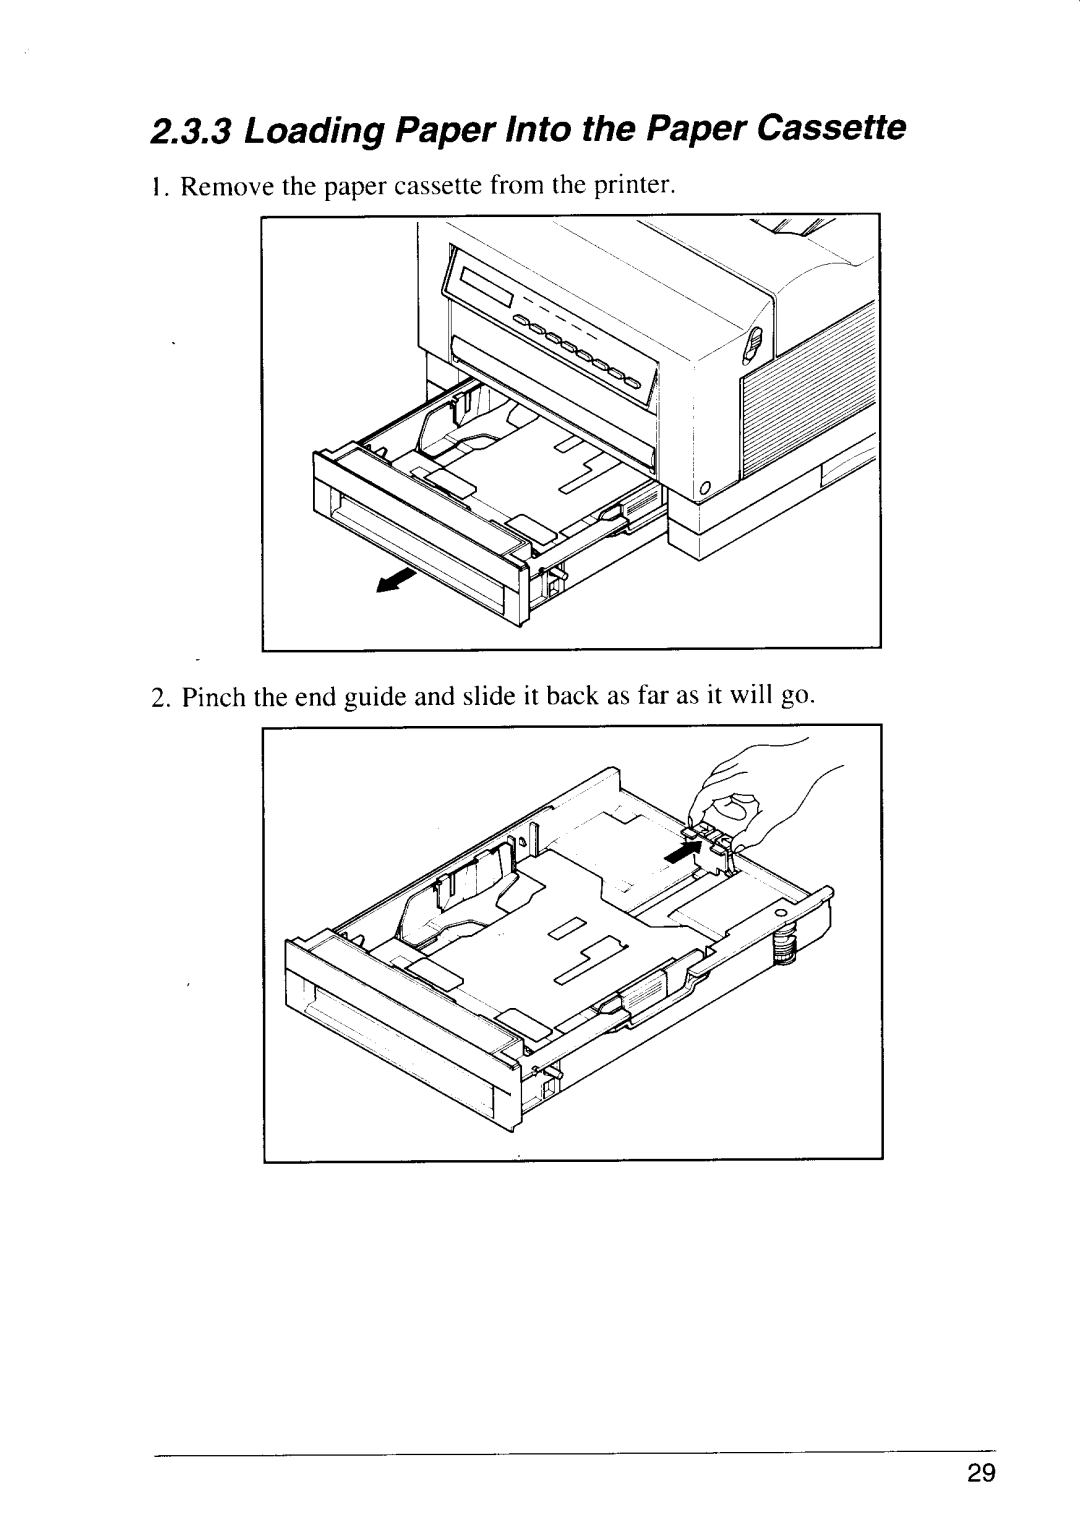 Star Micronics LS-5 TT, LS-5 EX Loading Paper Into the Paper Cassette, Remove the paper cassette from the printer 